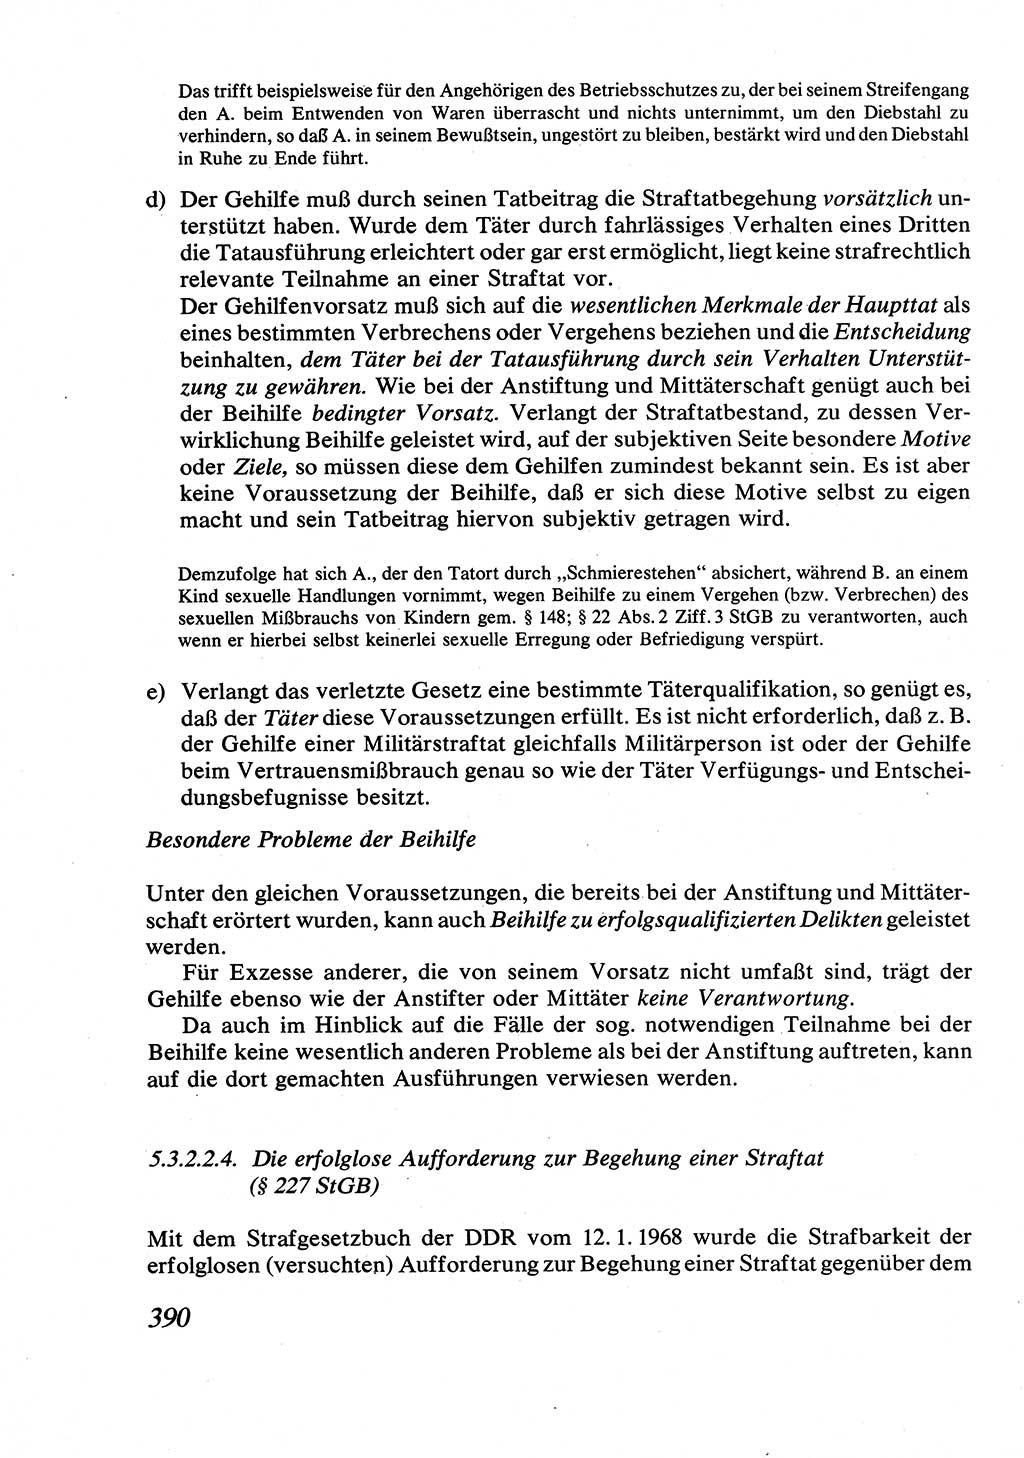 Strafrecht [Deutsche Demokratische Republik (DDR)], Allgemeiner Teil, Lehrbuch 1976, Seite 390 (Strafr. DDR AT Lb. 1976, S. 390)